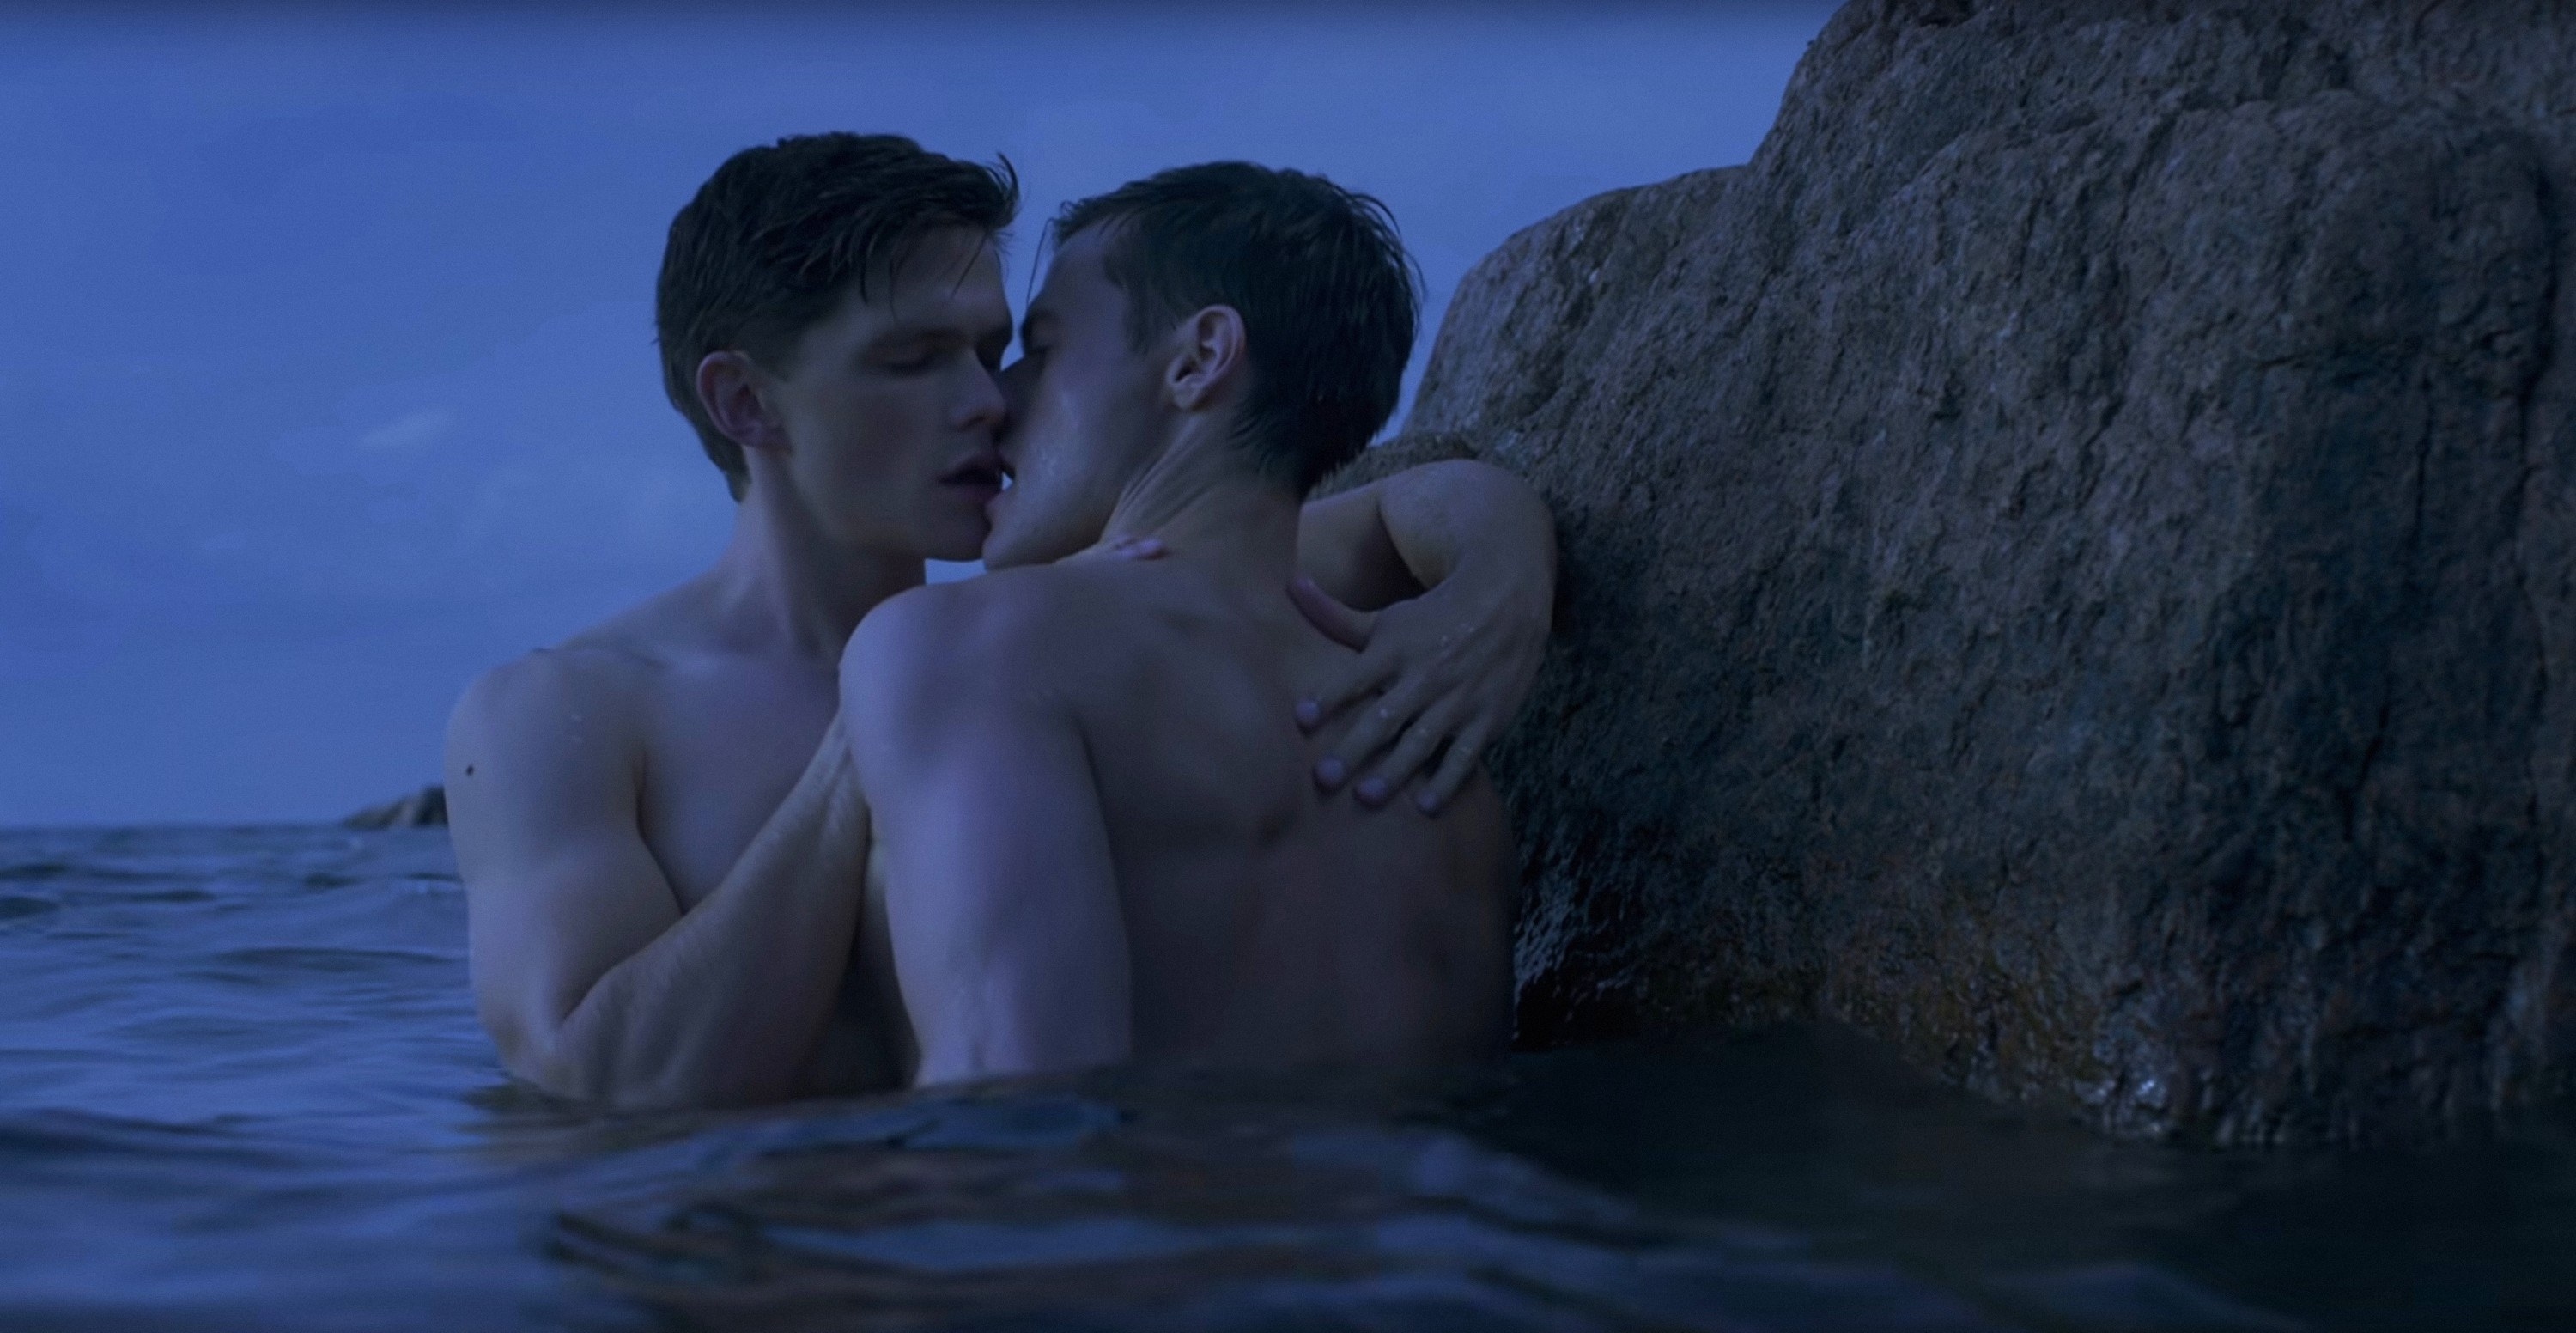 Tom Prior and Oleg Zagorodni kiss by a rock